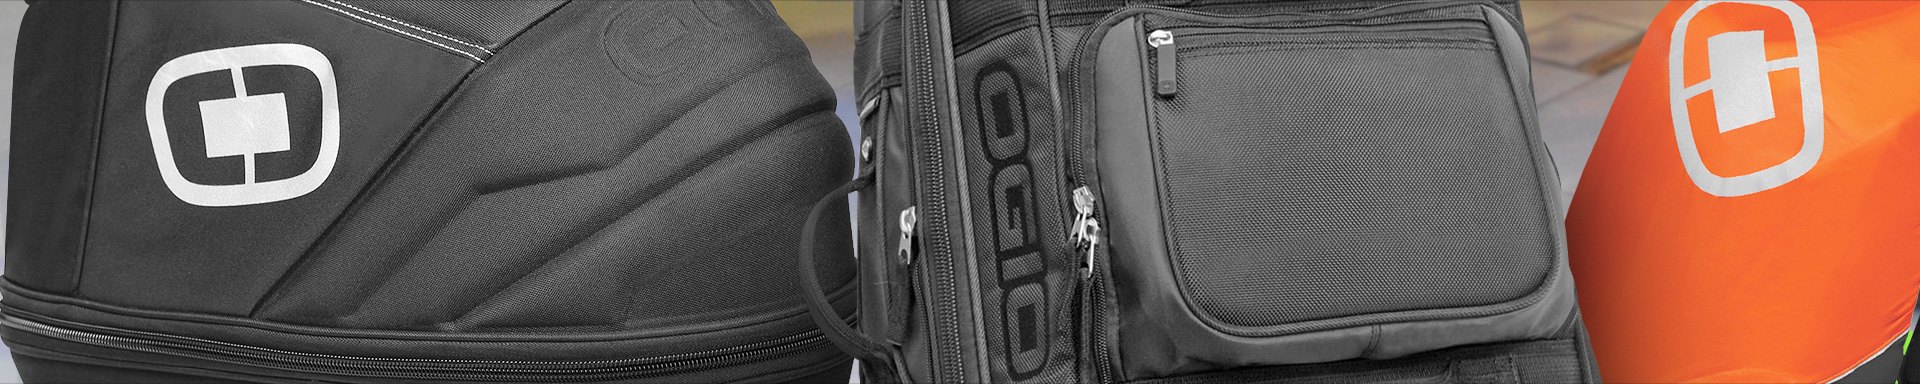 Ogio Luggage Systems & Saddlebags